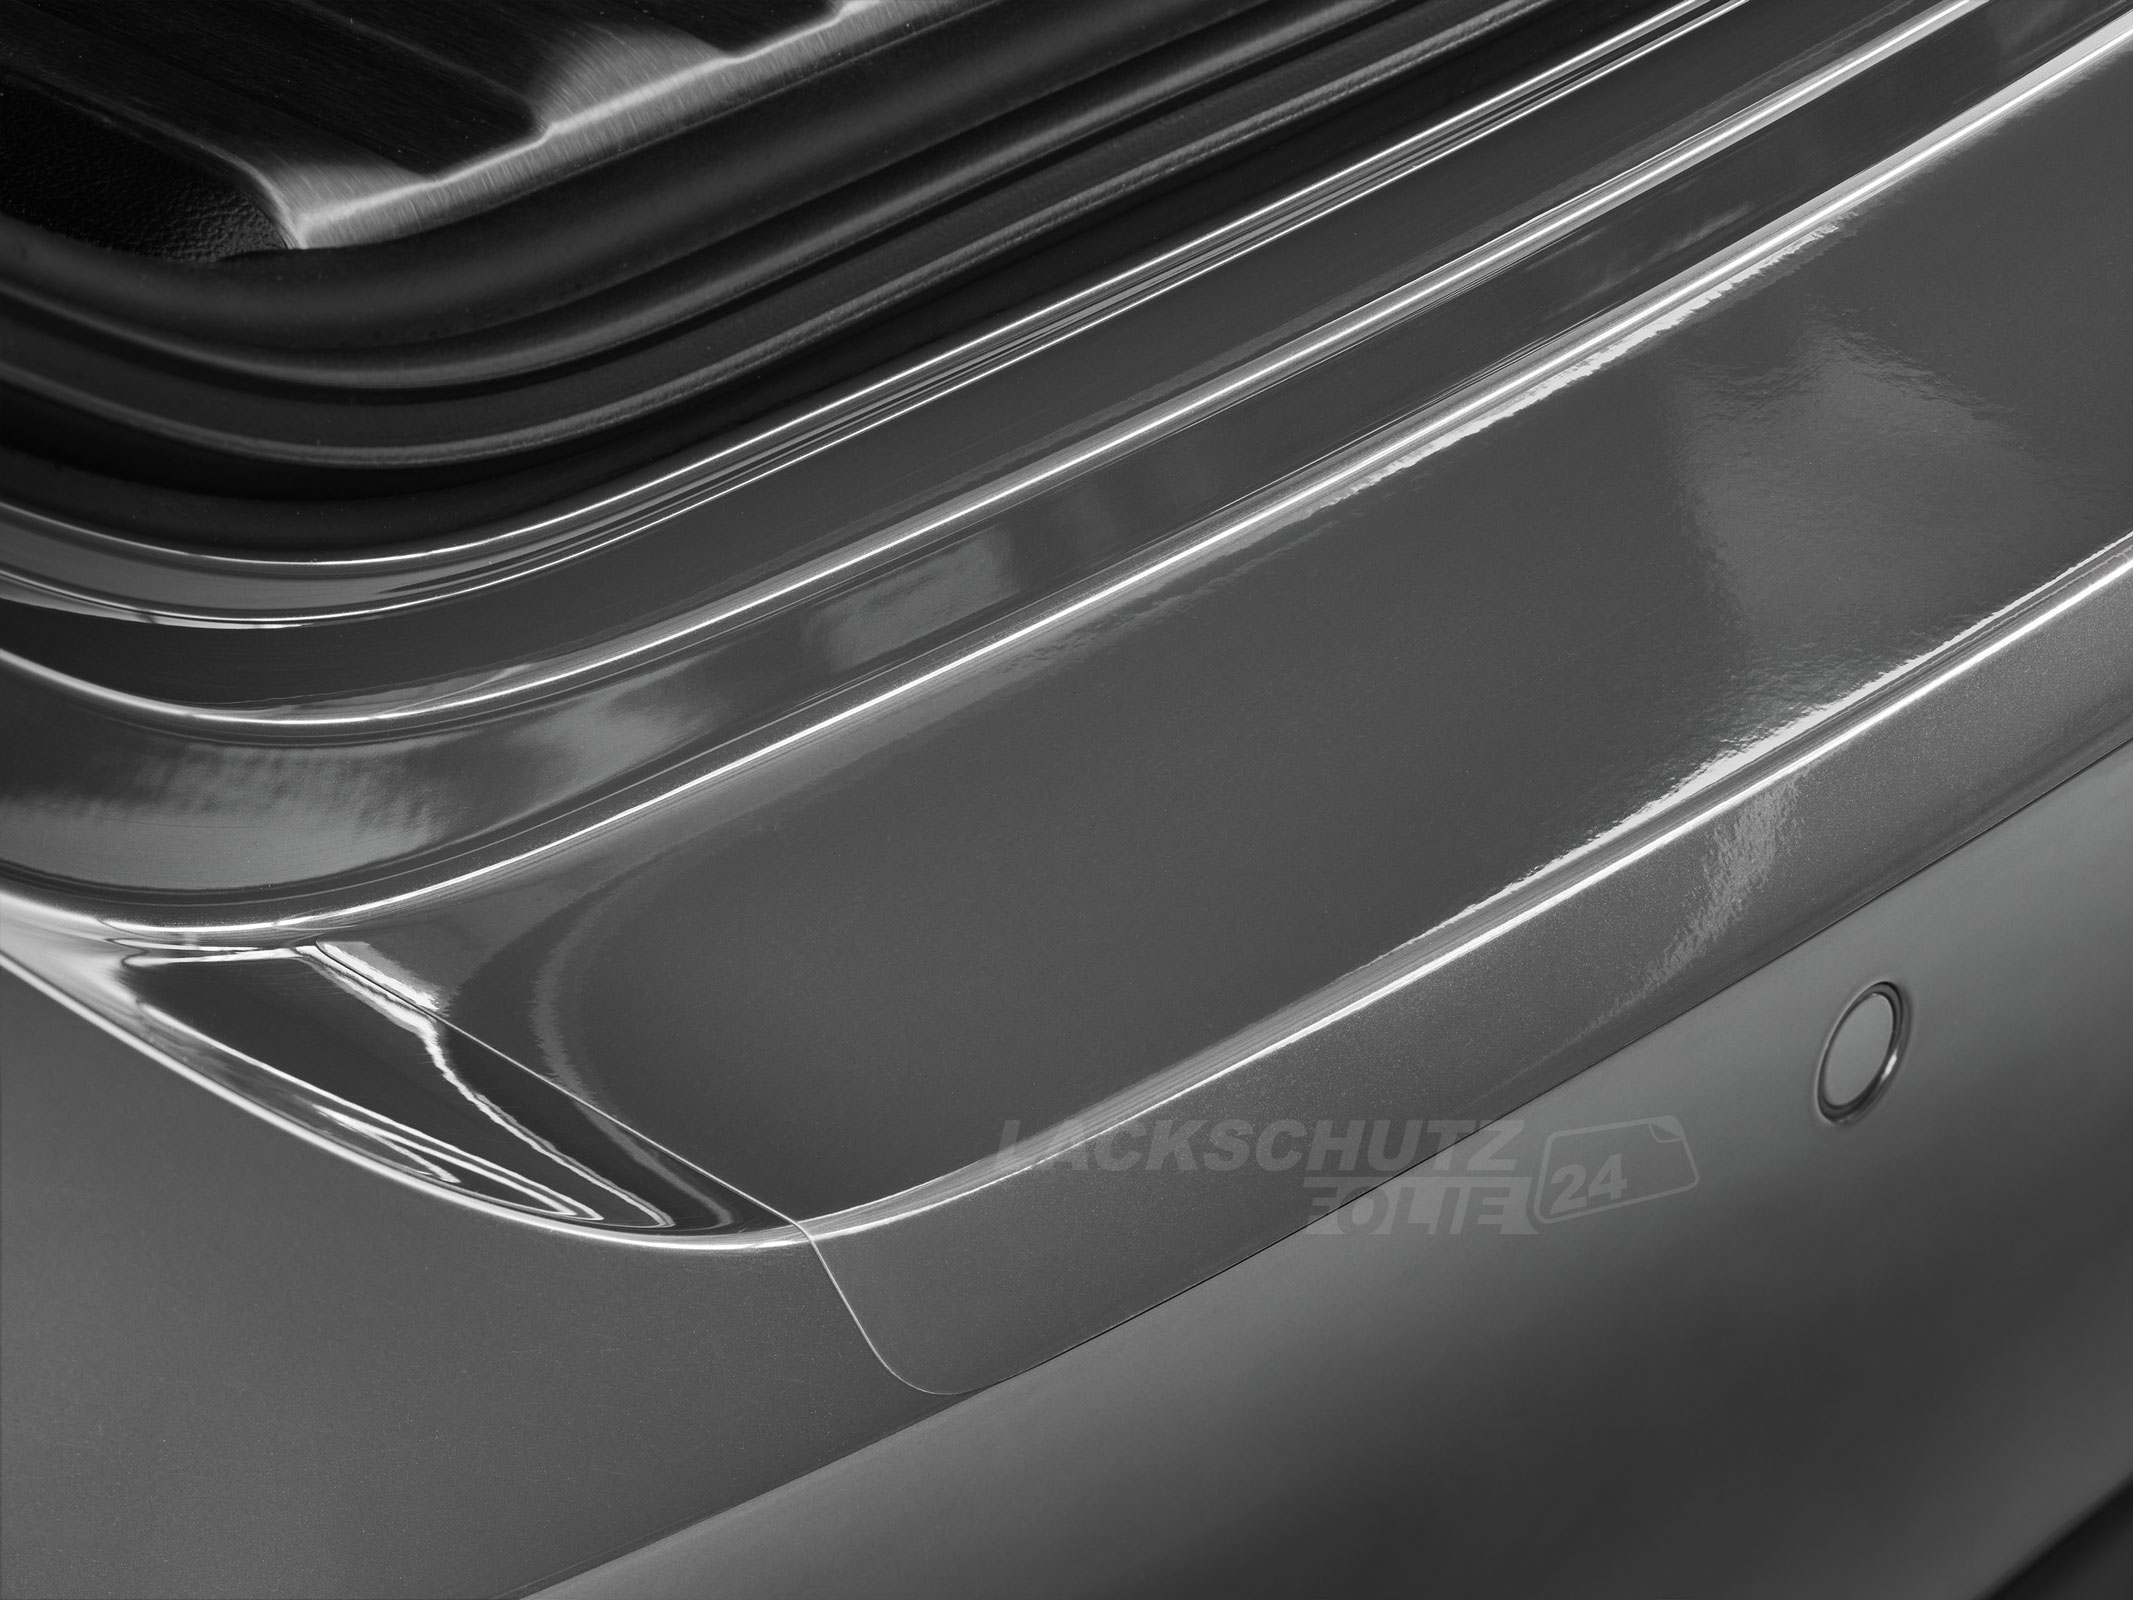 Ladekantenschutzfolie - Transparent Glatt Hochglänzend 150 µm stark für Toyota Verso-S BJ 03/2011-2015